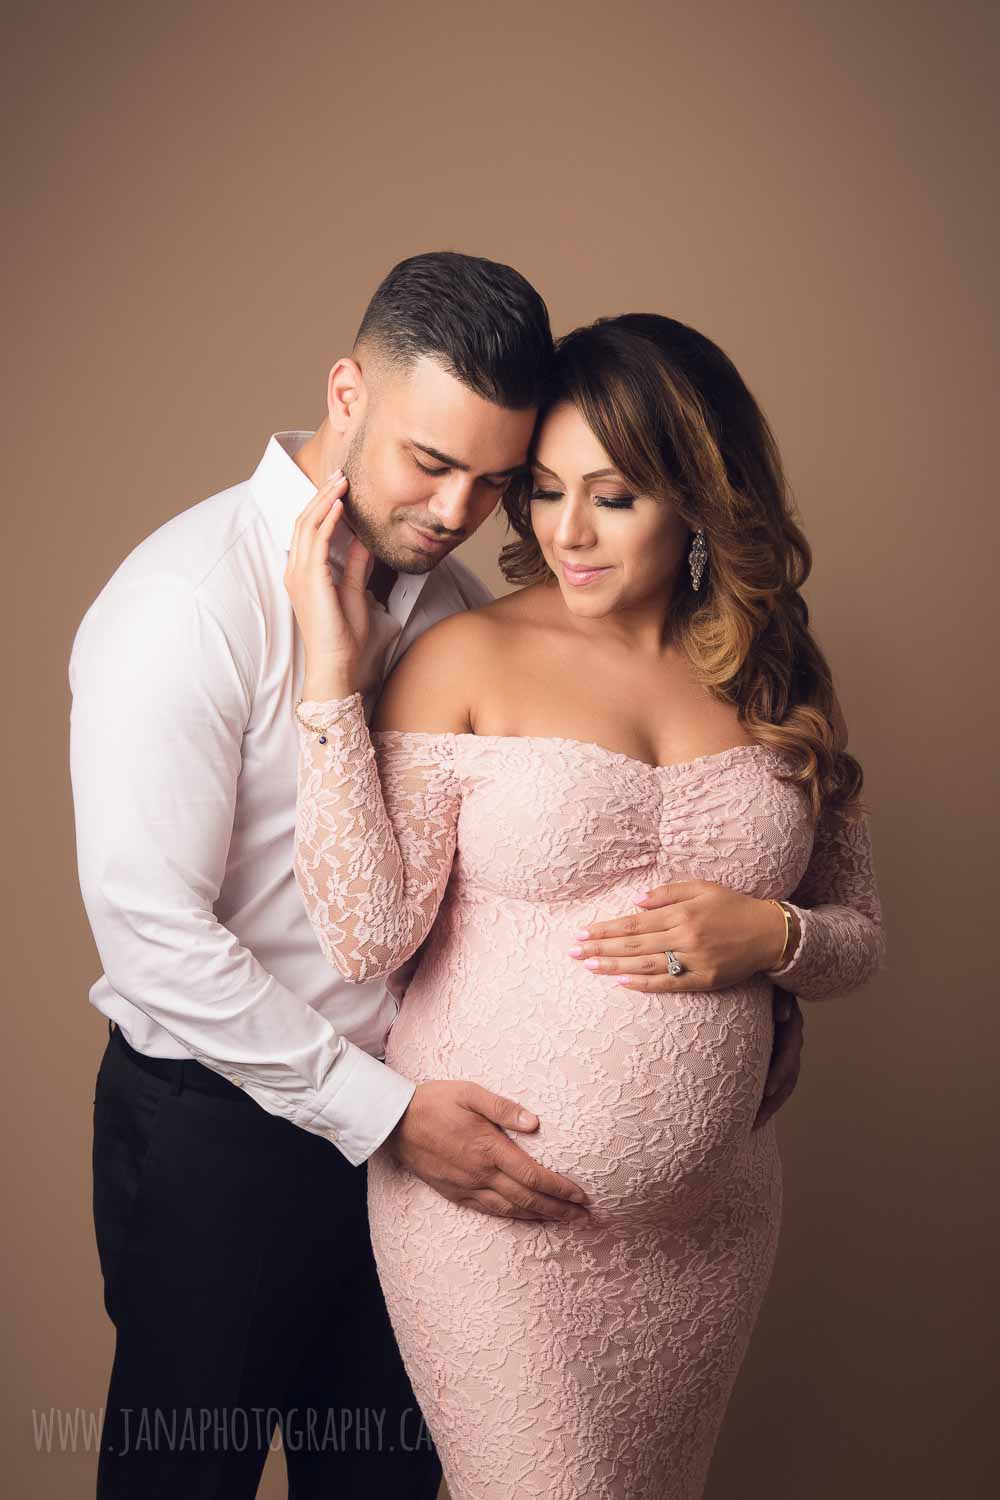 maternity photographer - vancouver - jana photography - pink dress